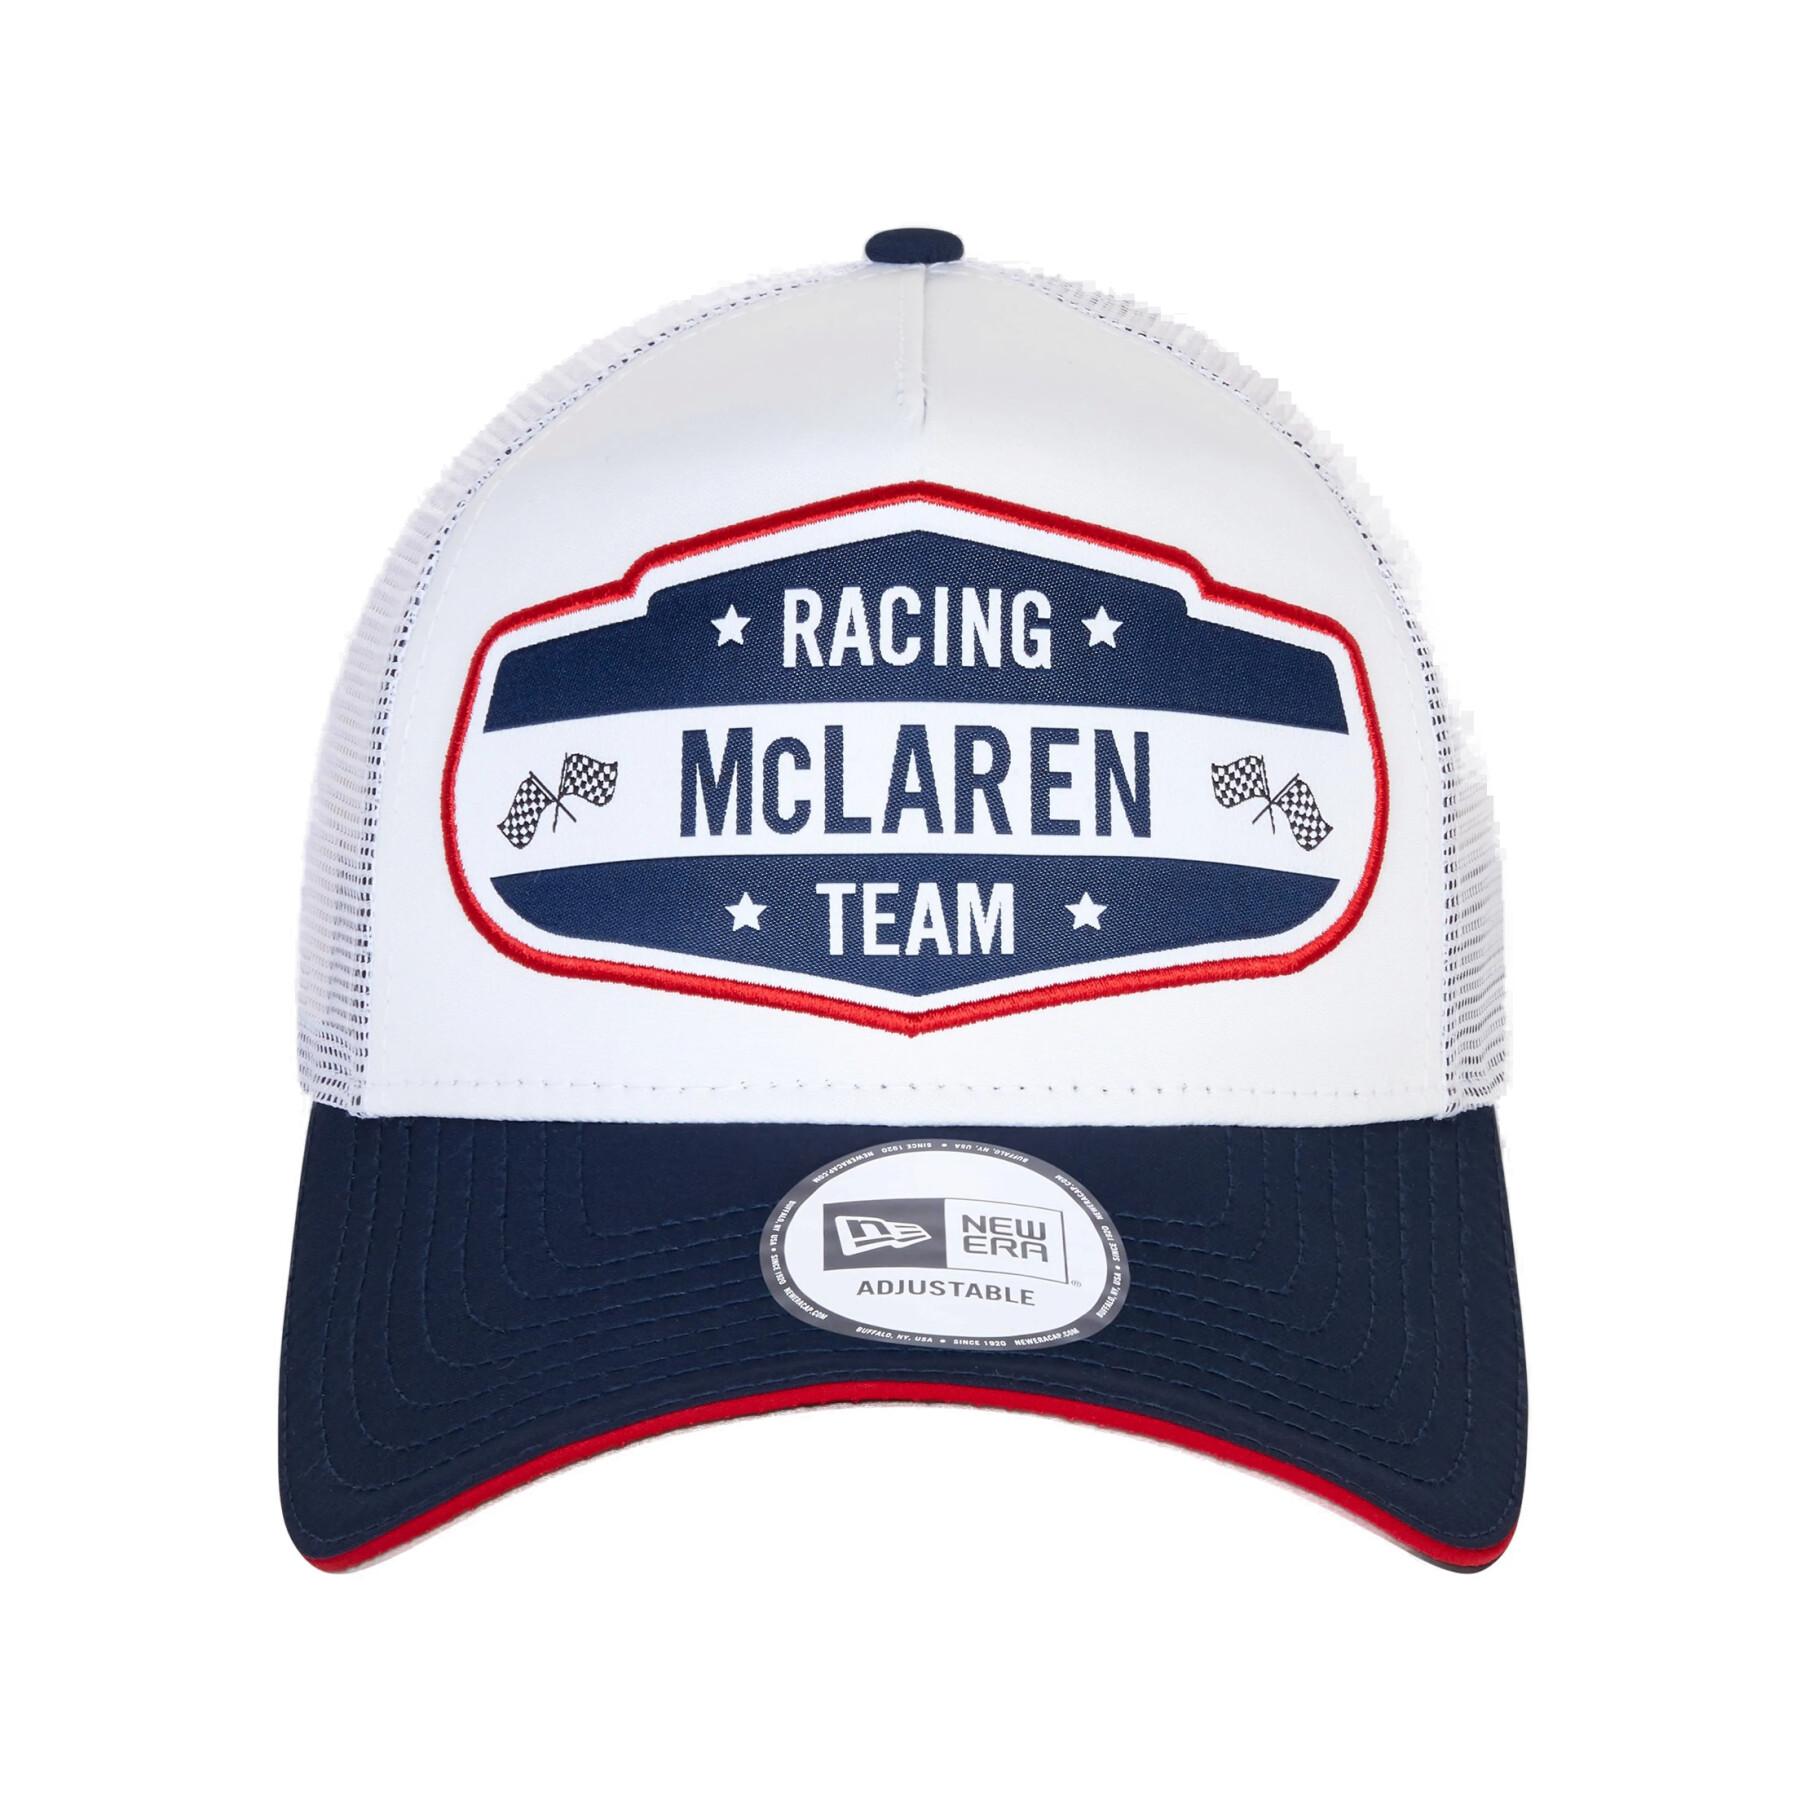 Trucker pet Mclaren Racing Usa